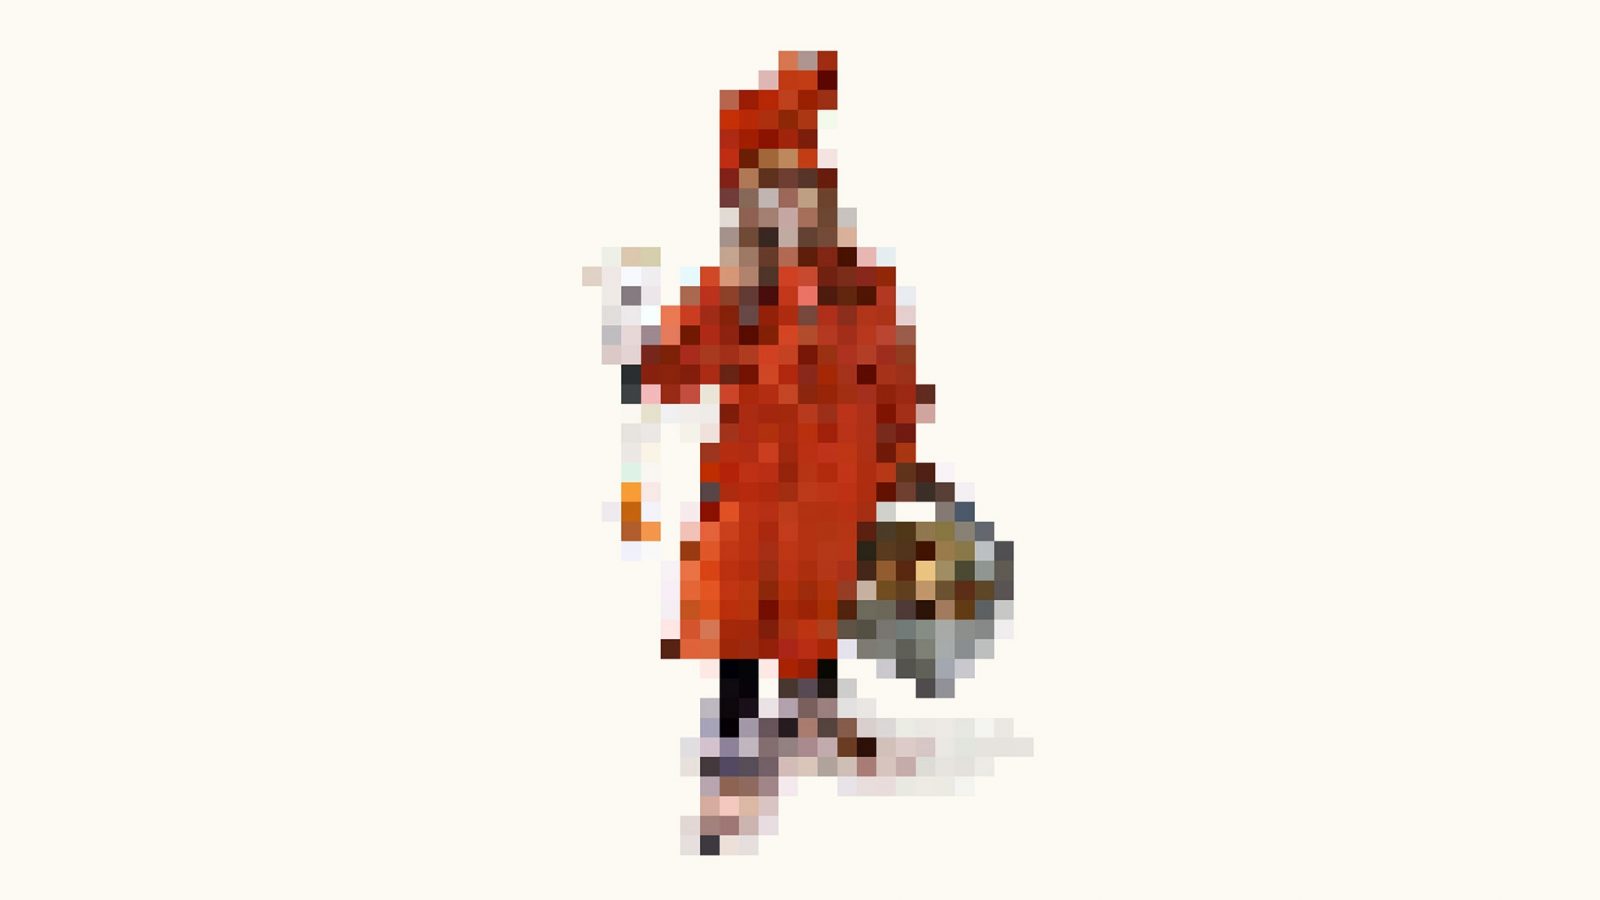 En pixlad version av den berömda målningen ”Brita som Idun” – en ung flicka i röd klänning, av Carl Larsson.